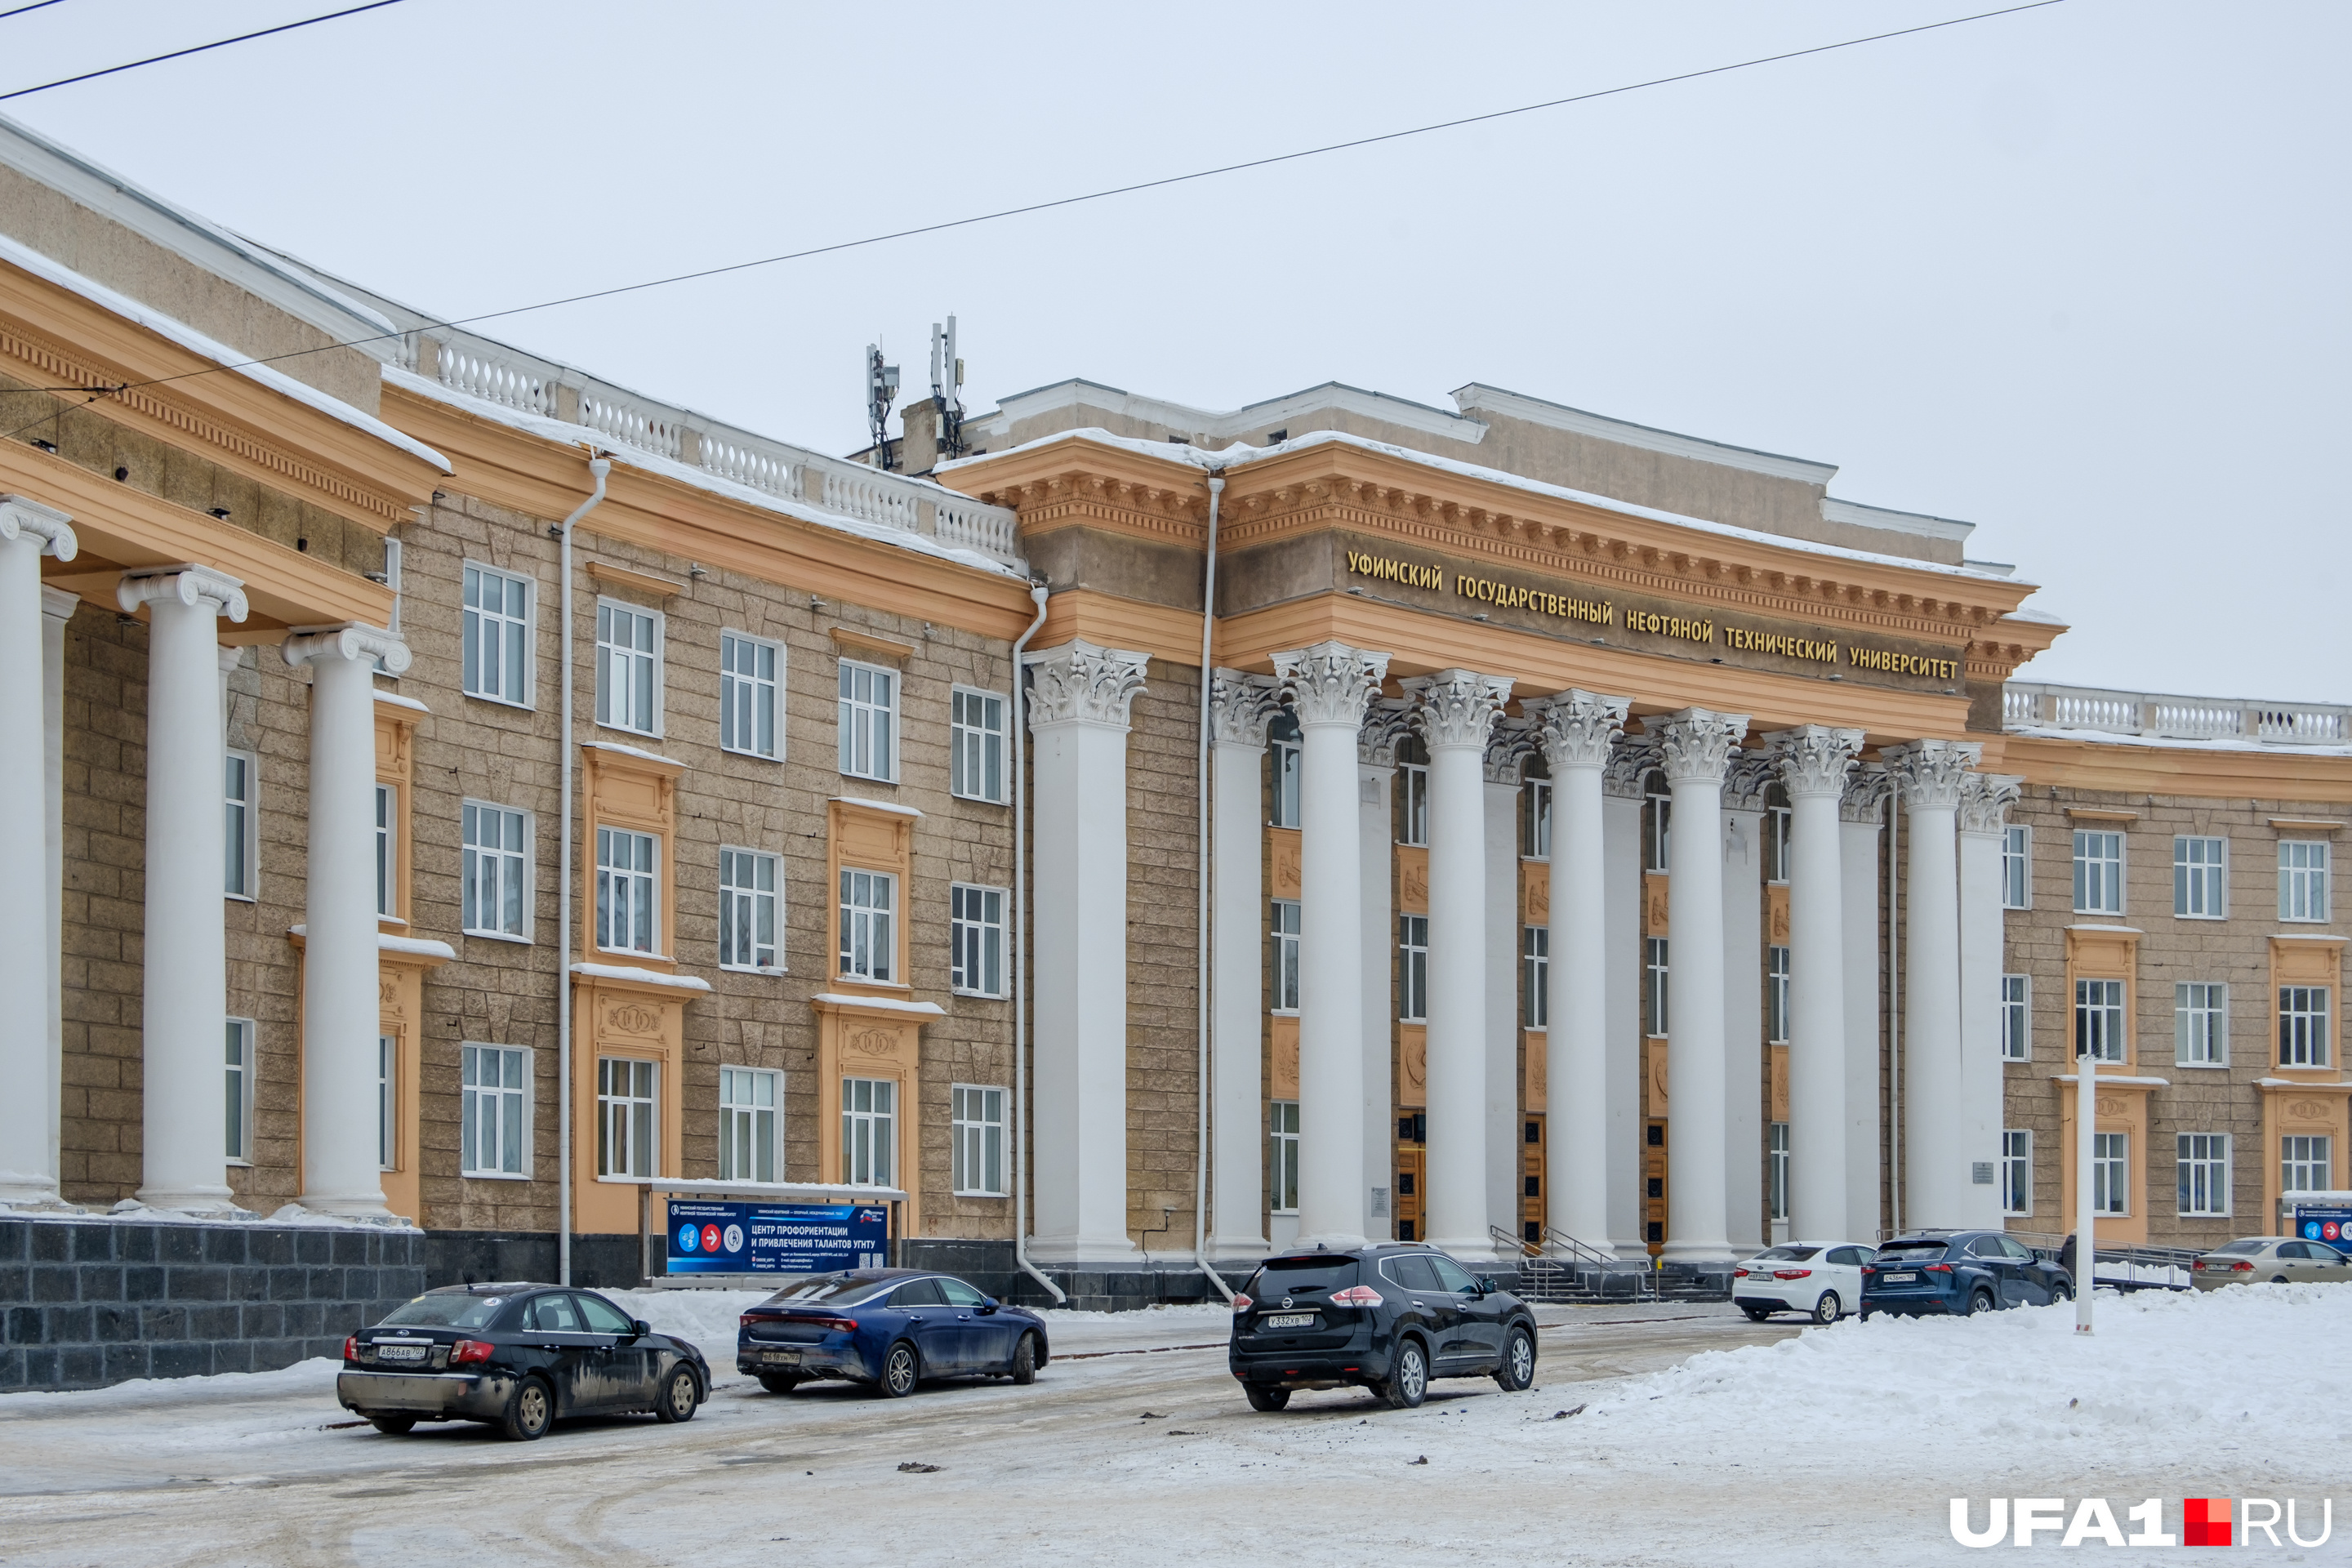 Улицы, которые расходятся лучами от Дворца Орджоникидзе, были запланированы раньше, чем построили само здание